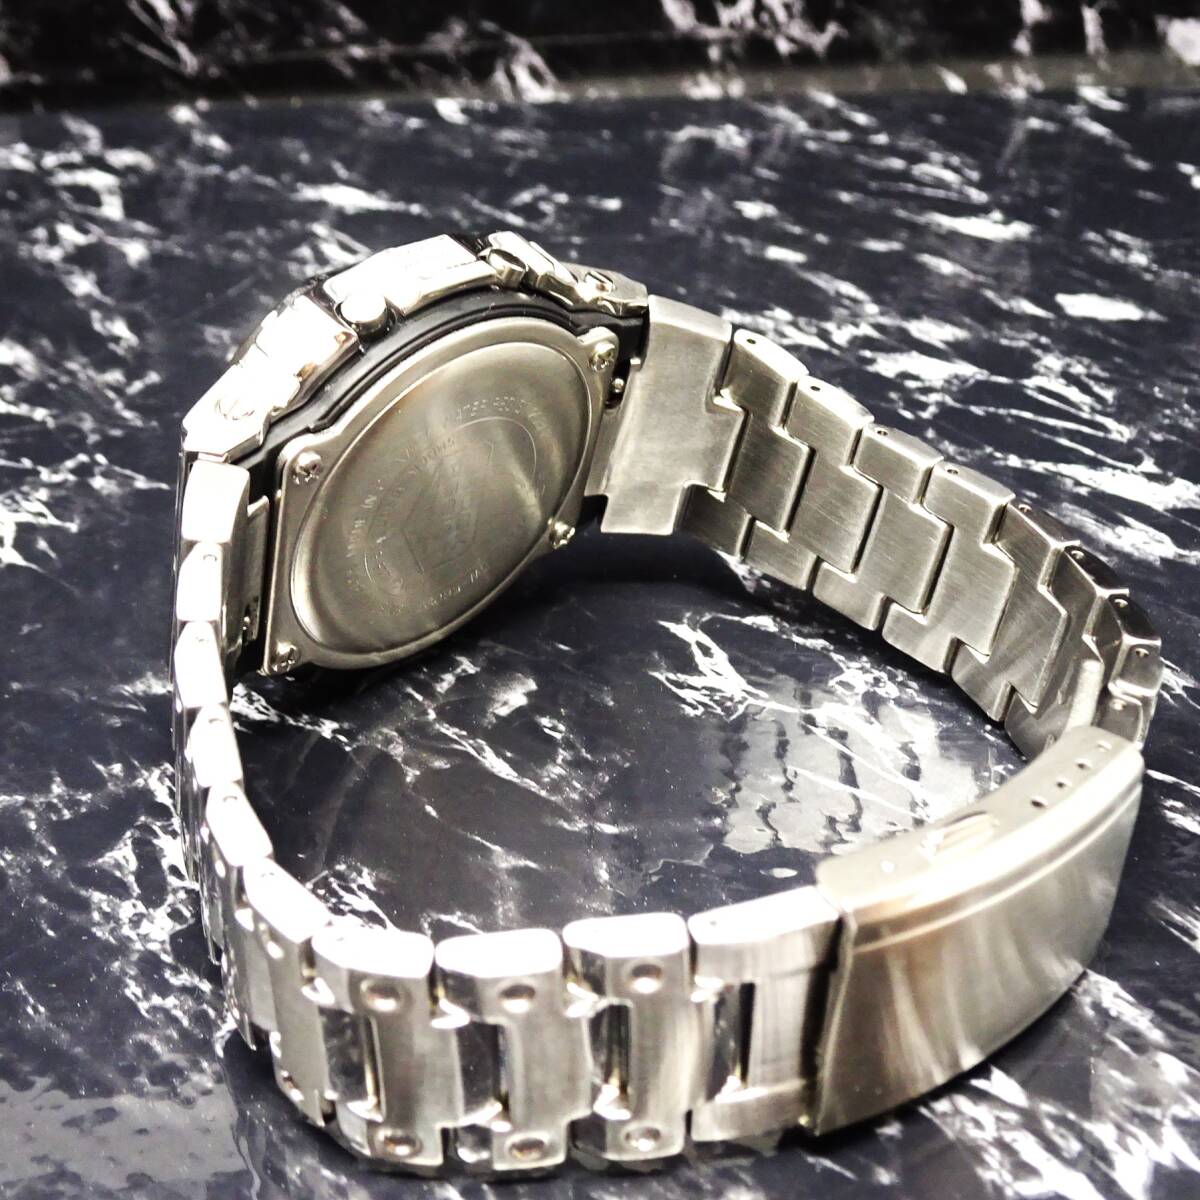 送料無料・新品・Gショックカスタム本体付きDW5600デジタル腕時計ステンレス製ジルコニアベゼル＆ベルト・フルメタルラグジュアリーモデル